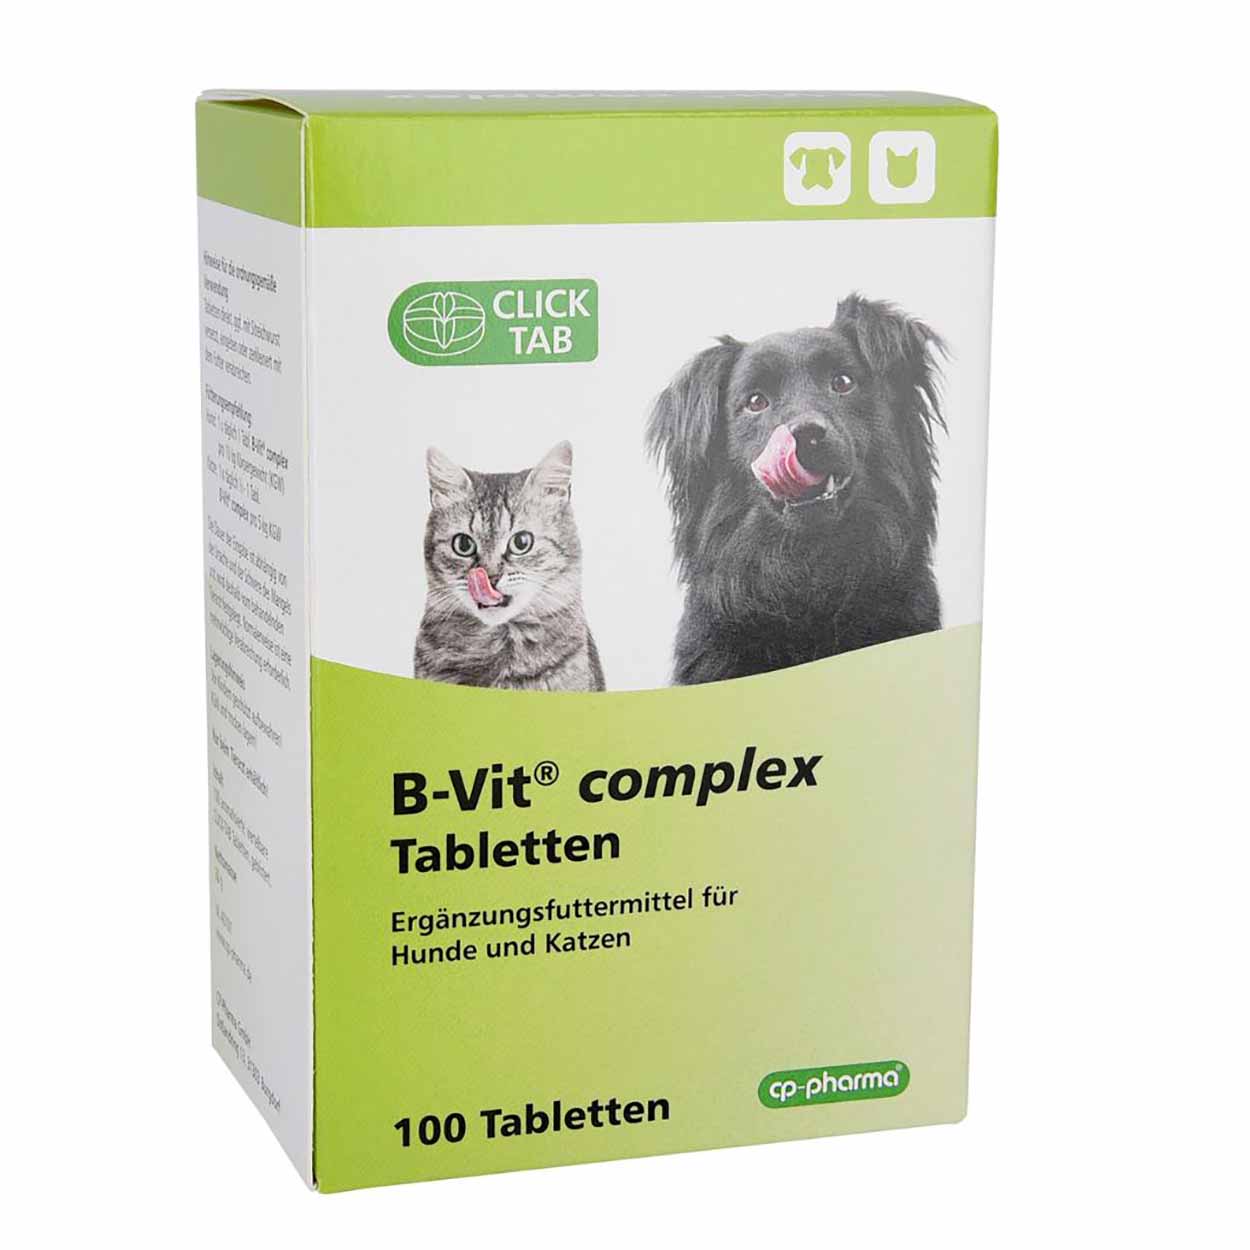 Cyclops Fyrretræ koncert B-Vit complex Tabletten für Hunde und Katzen | Vitamine, Mineralien